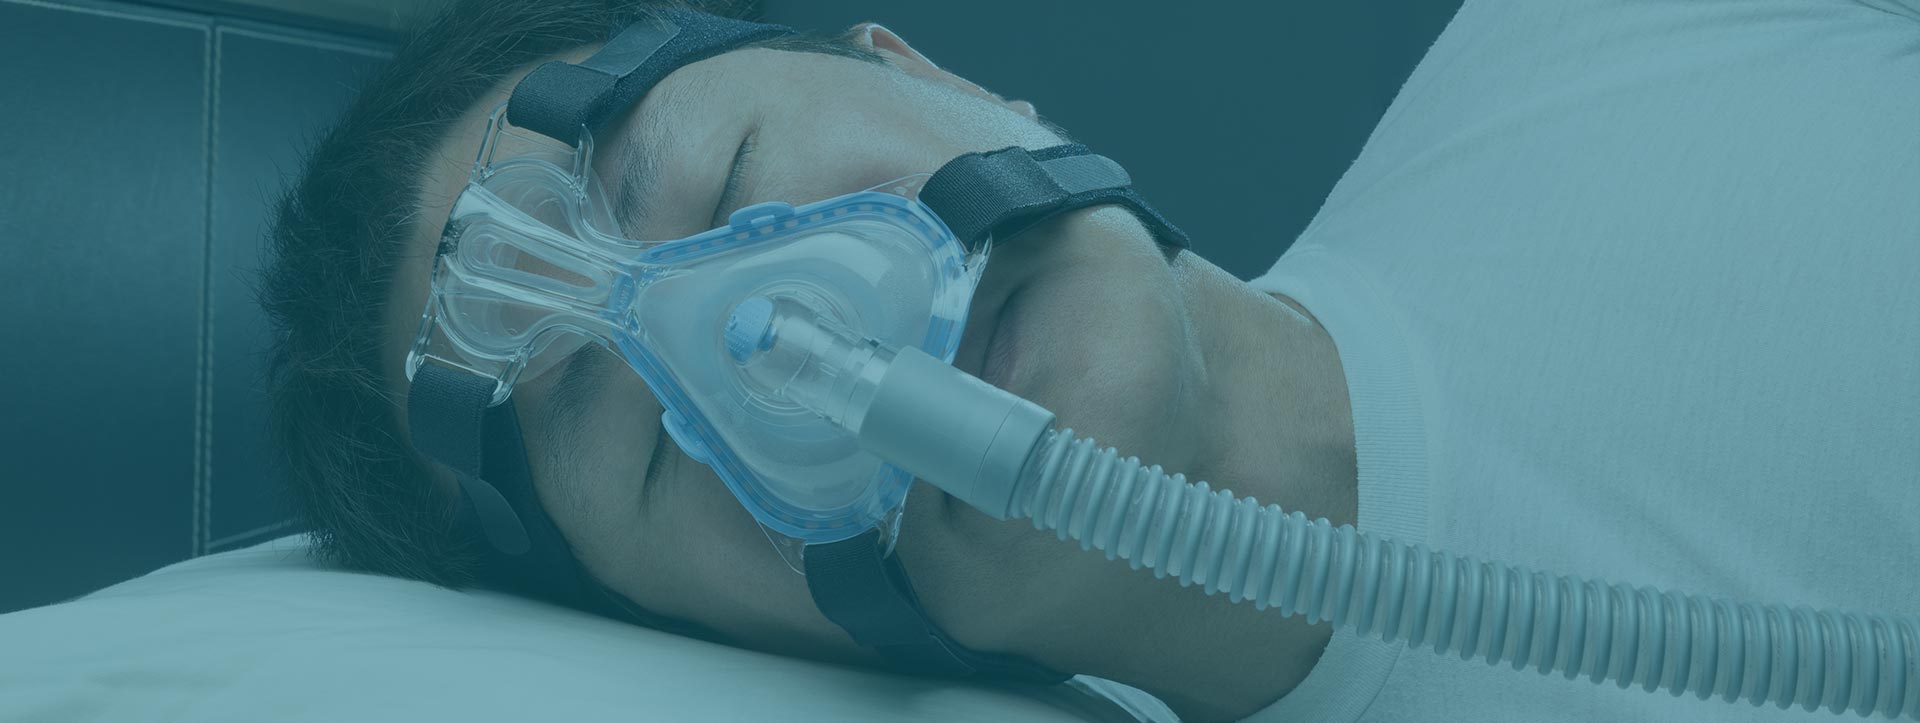 Man sleeping using CPAP machine